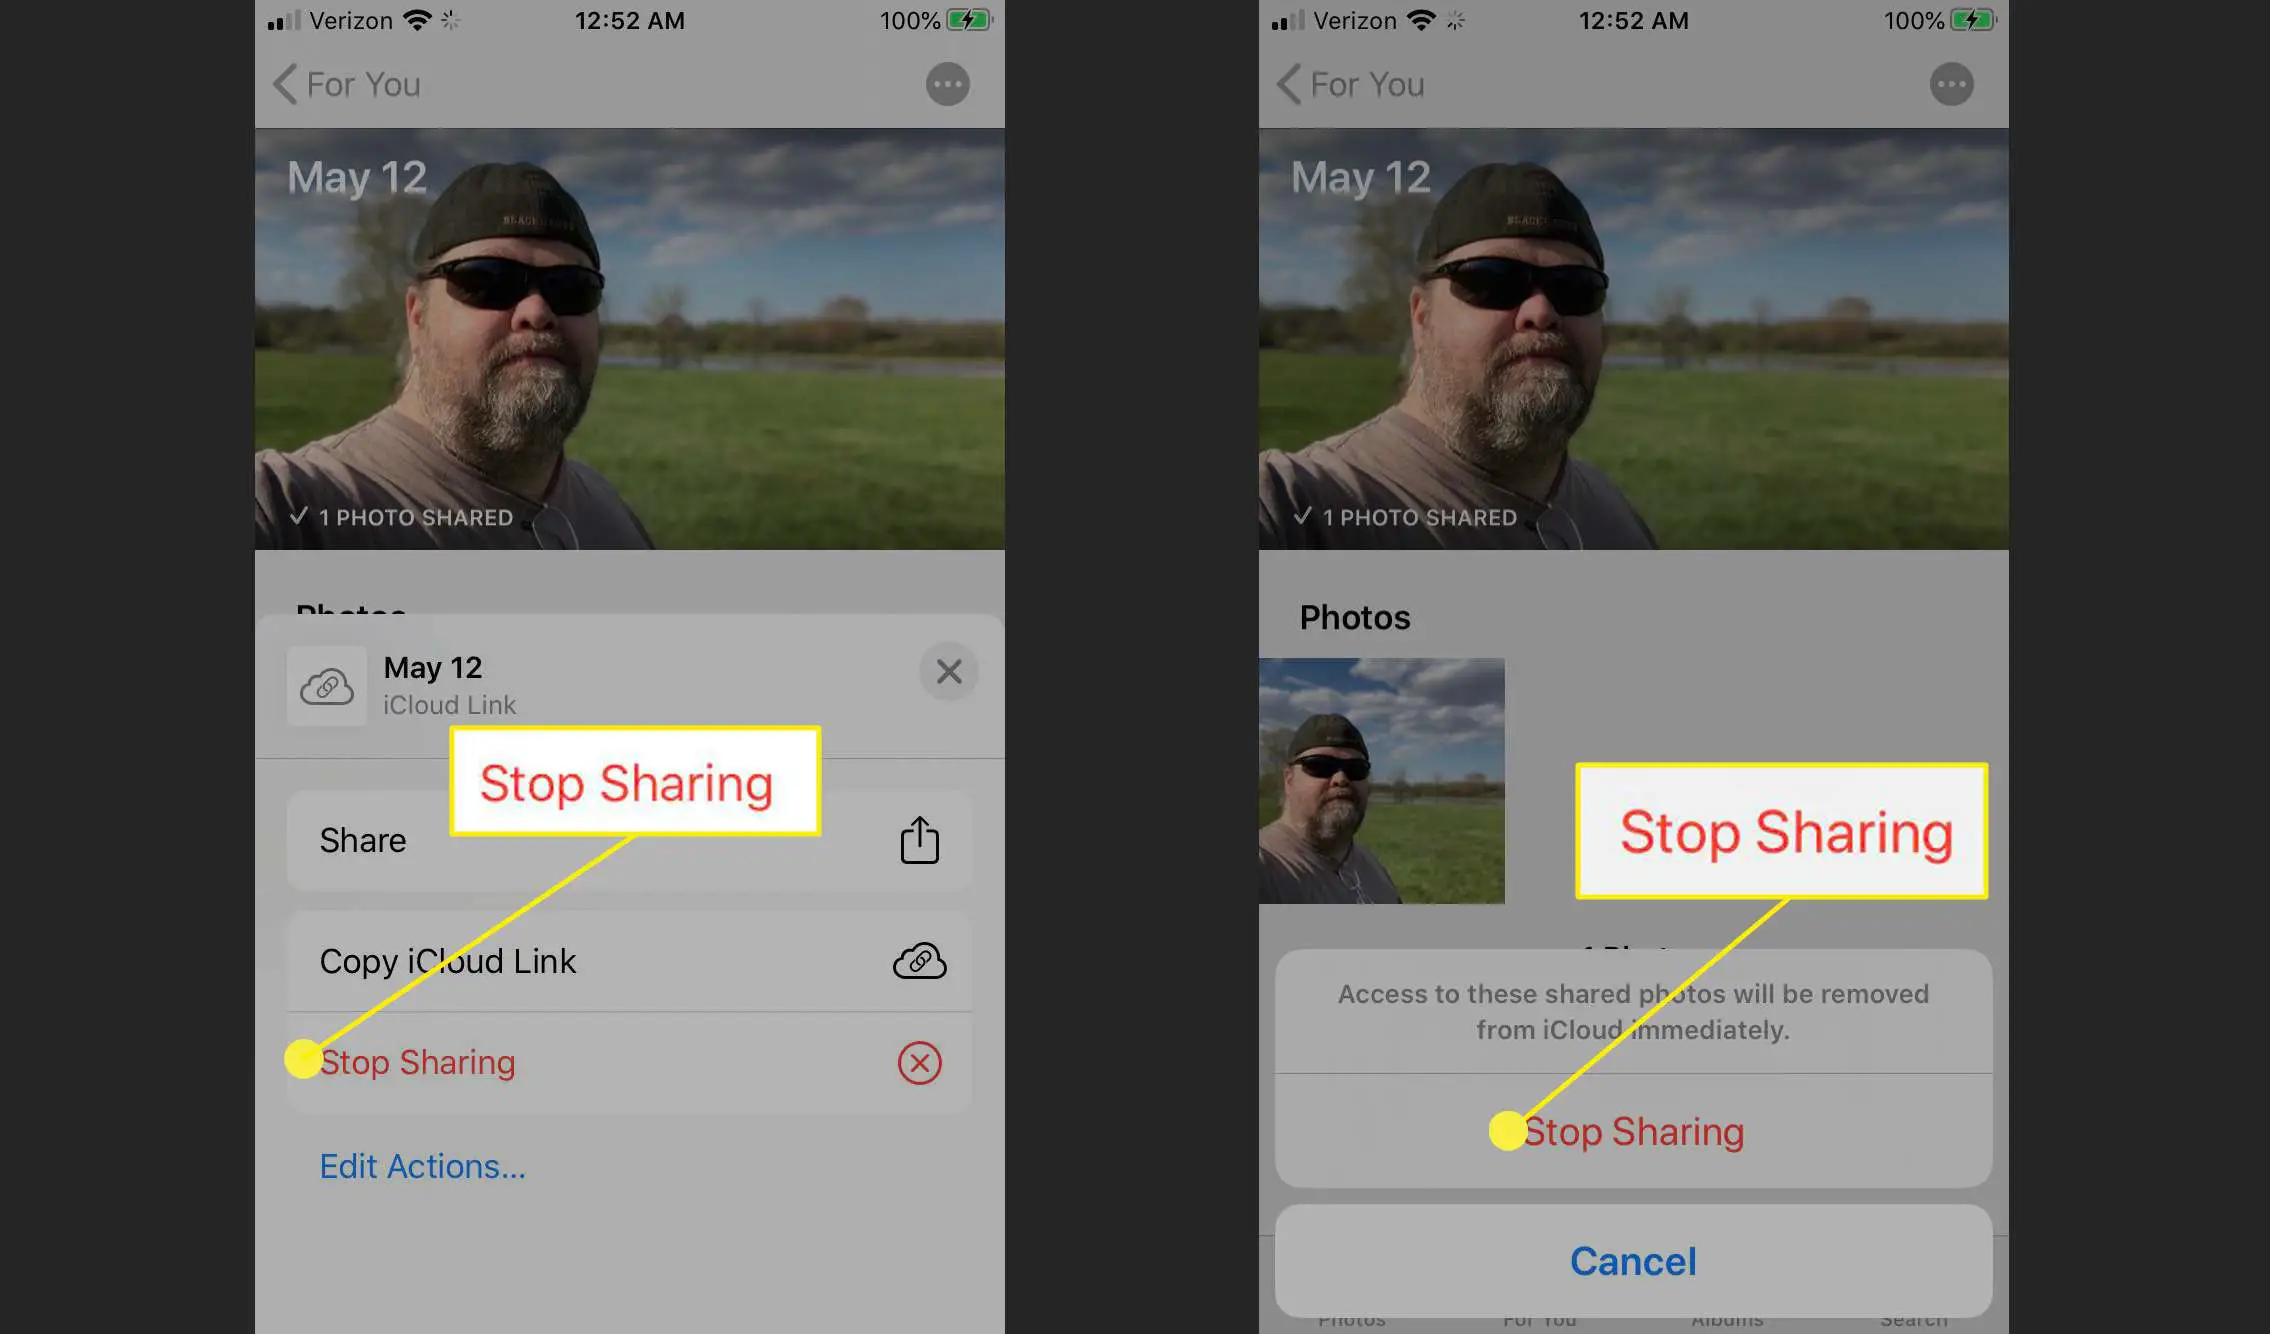 A opção de parar compartilhamento para o compartilhamento de fotos do iCloud Link